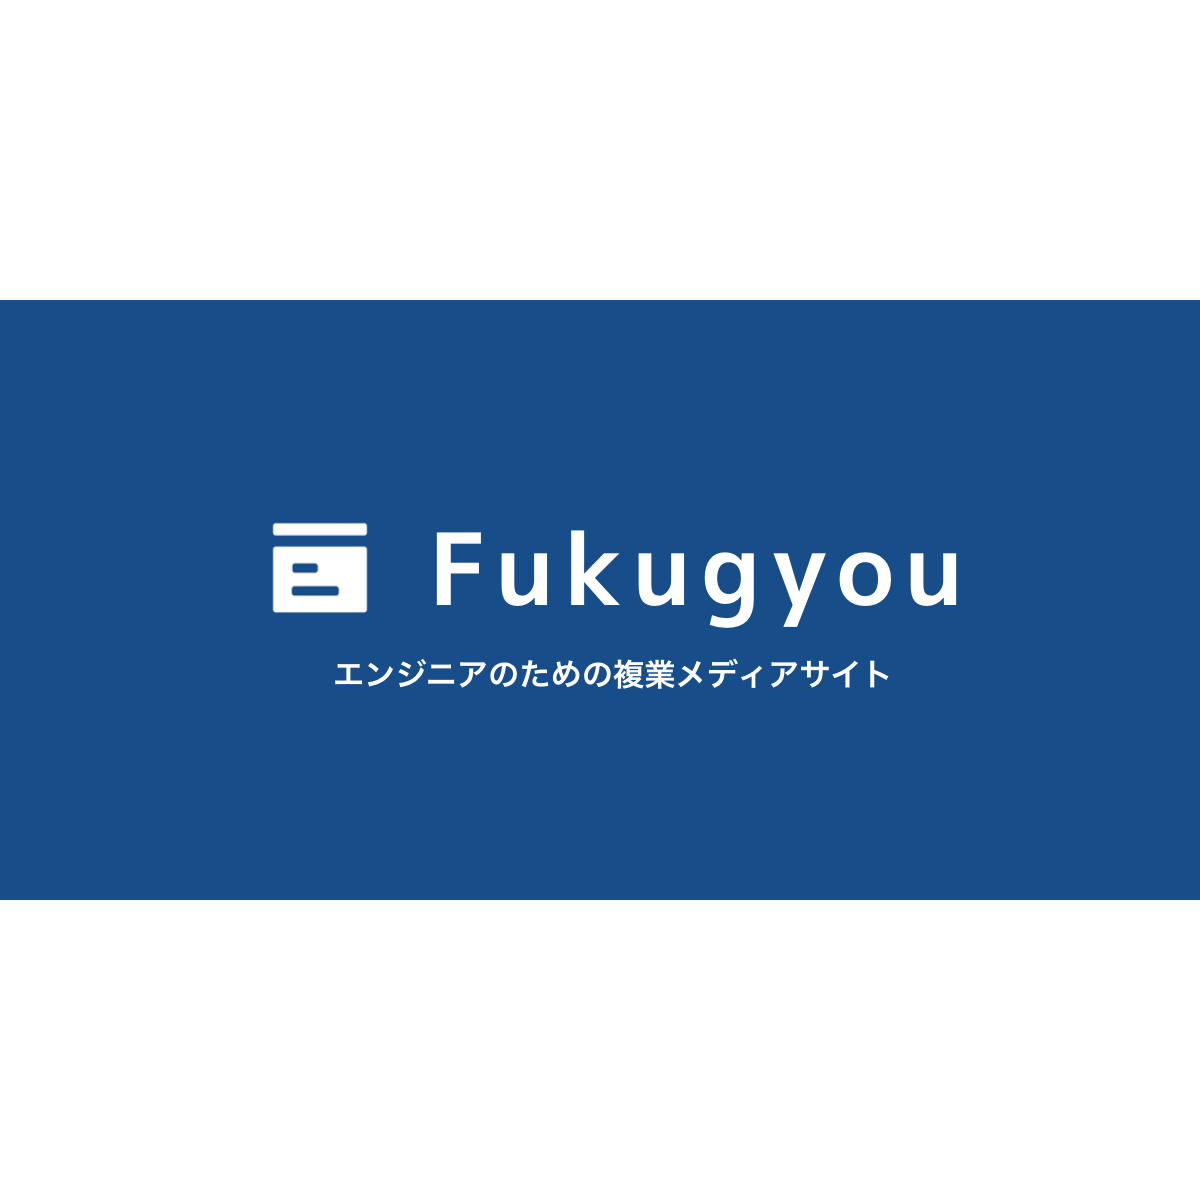 Fukugyou